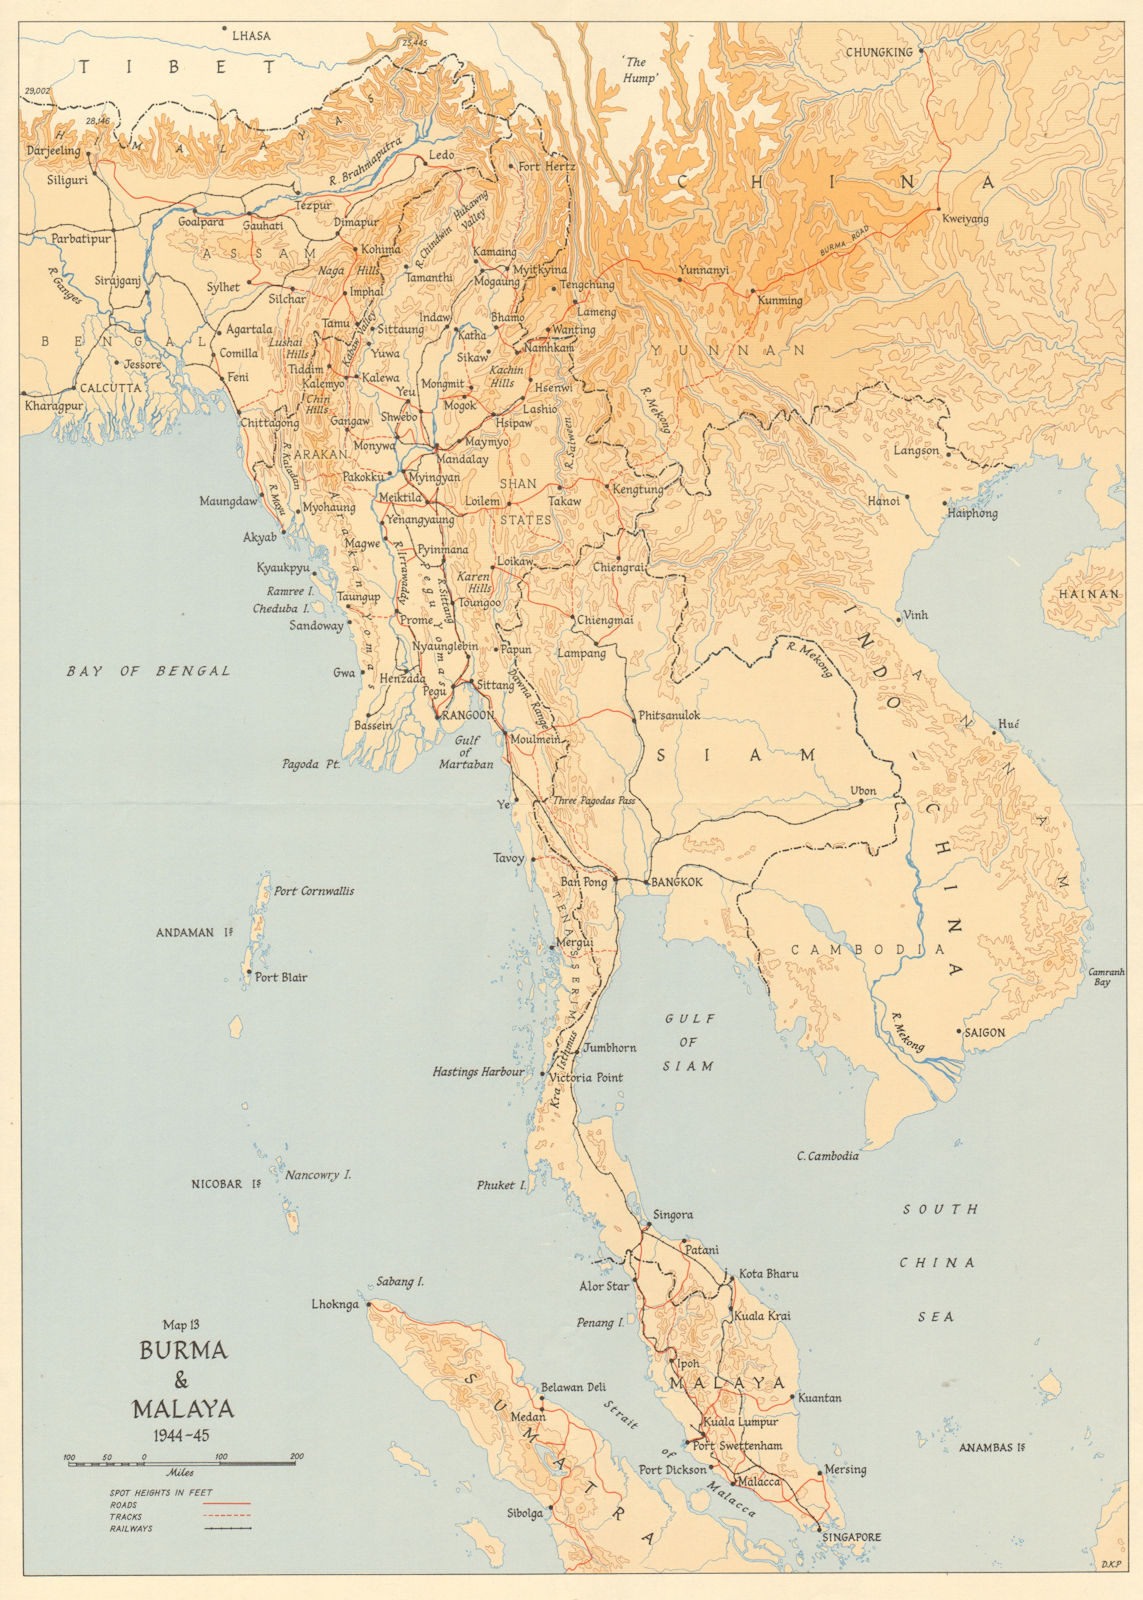 Burma & Malaya 1944-45. Roads railways. Burma Road. Indochina Siam WW2 1965 map